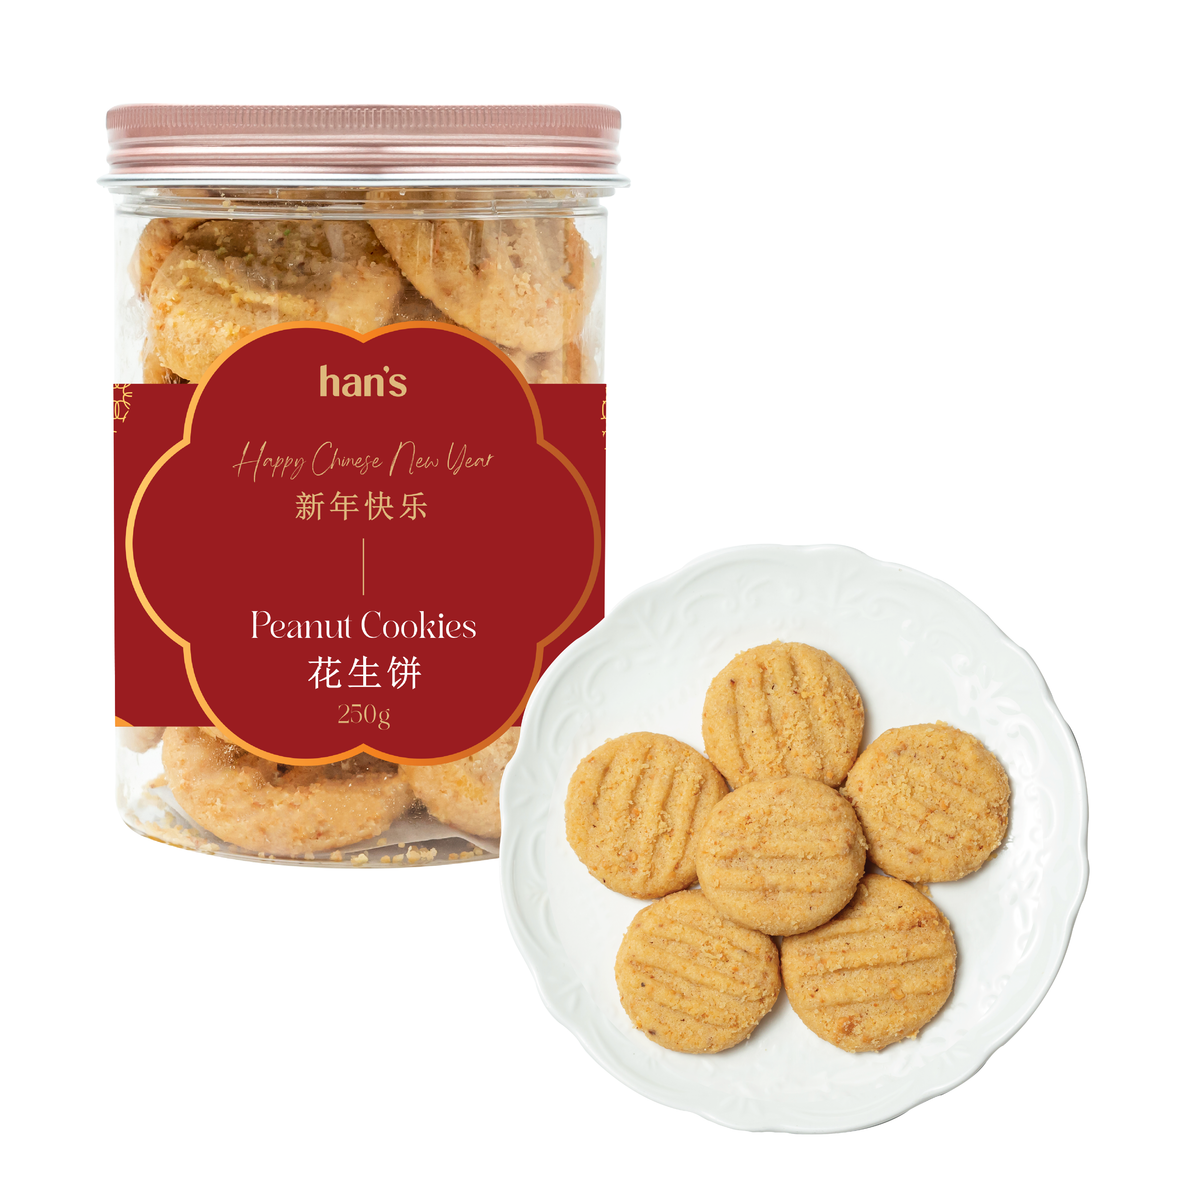 Peanut Cookies (250g)